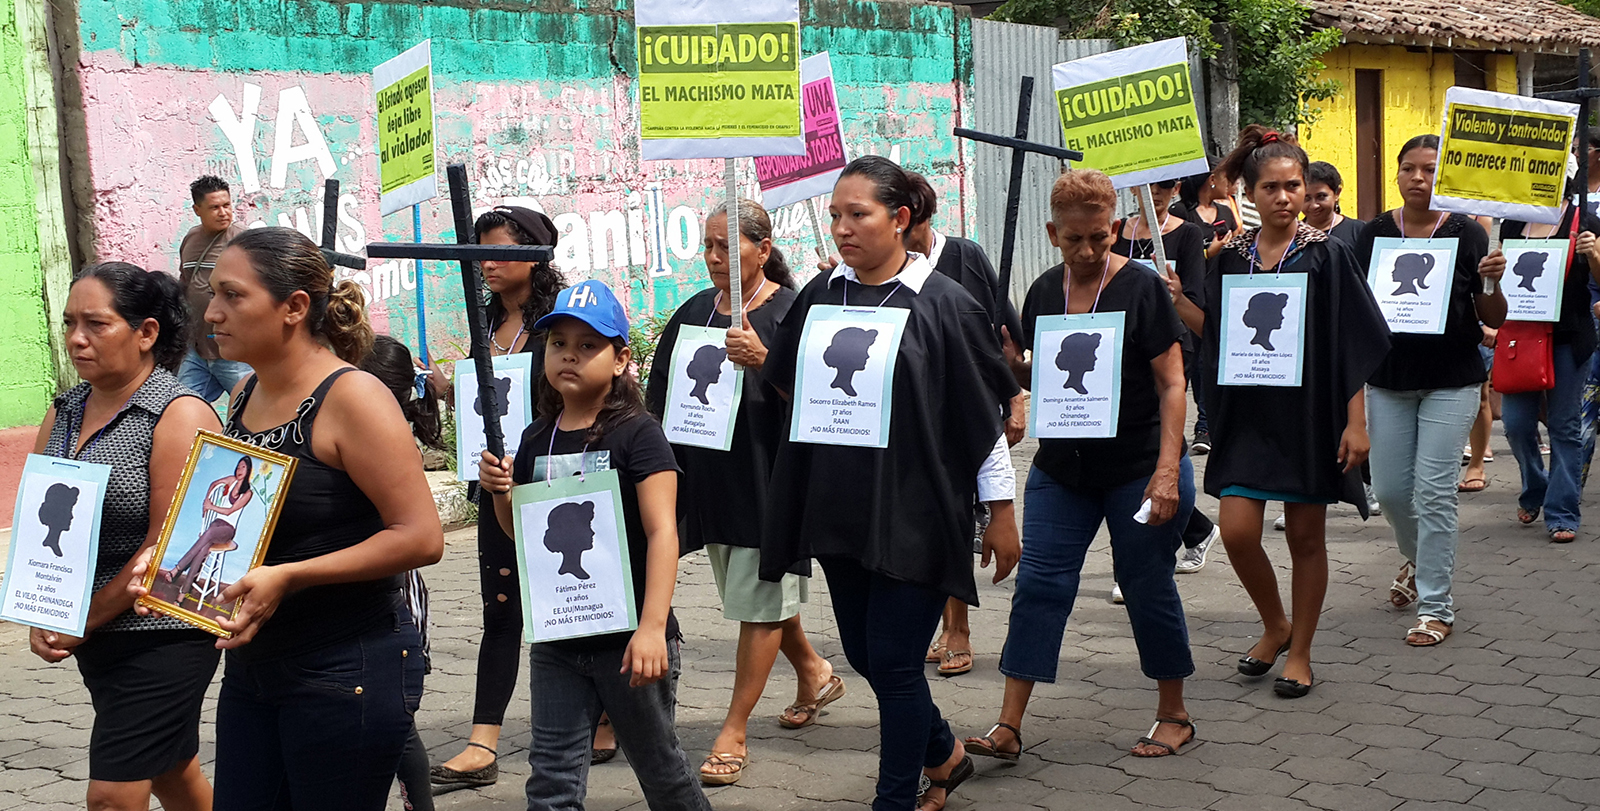 Caminata de mujeres para exigir reconocimiento y justicia por femicidios en el Viejo, Chinandega / 13 de julio 2014